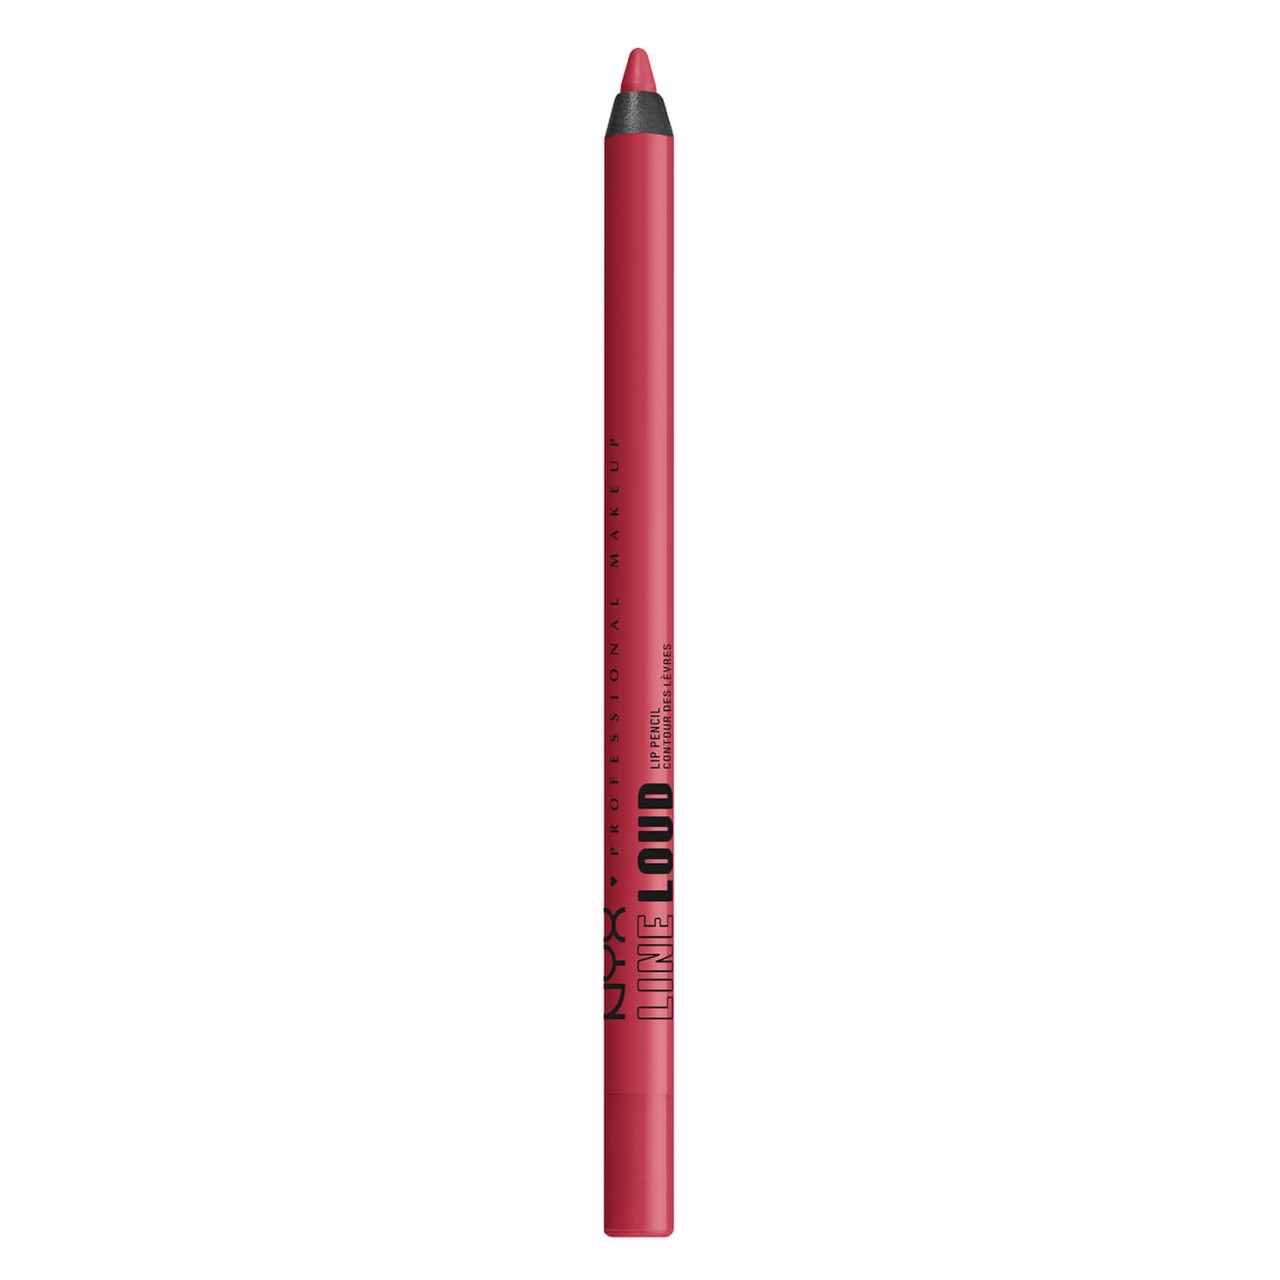 Line Loud Longwear Lip Pencil - 12 On a Mission von NYX Professional Makeup